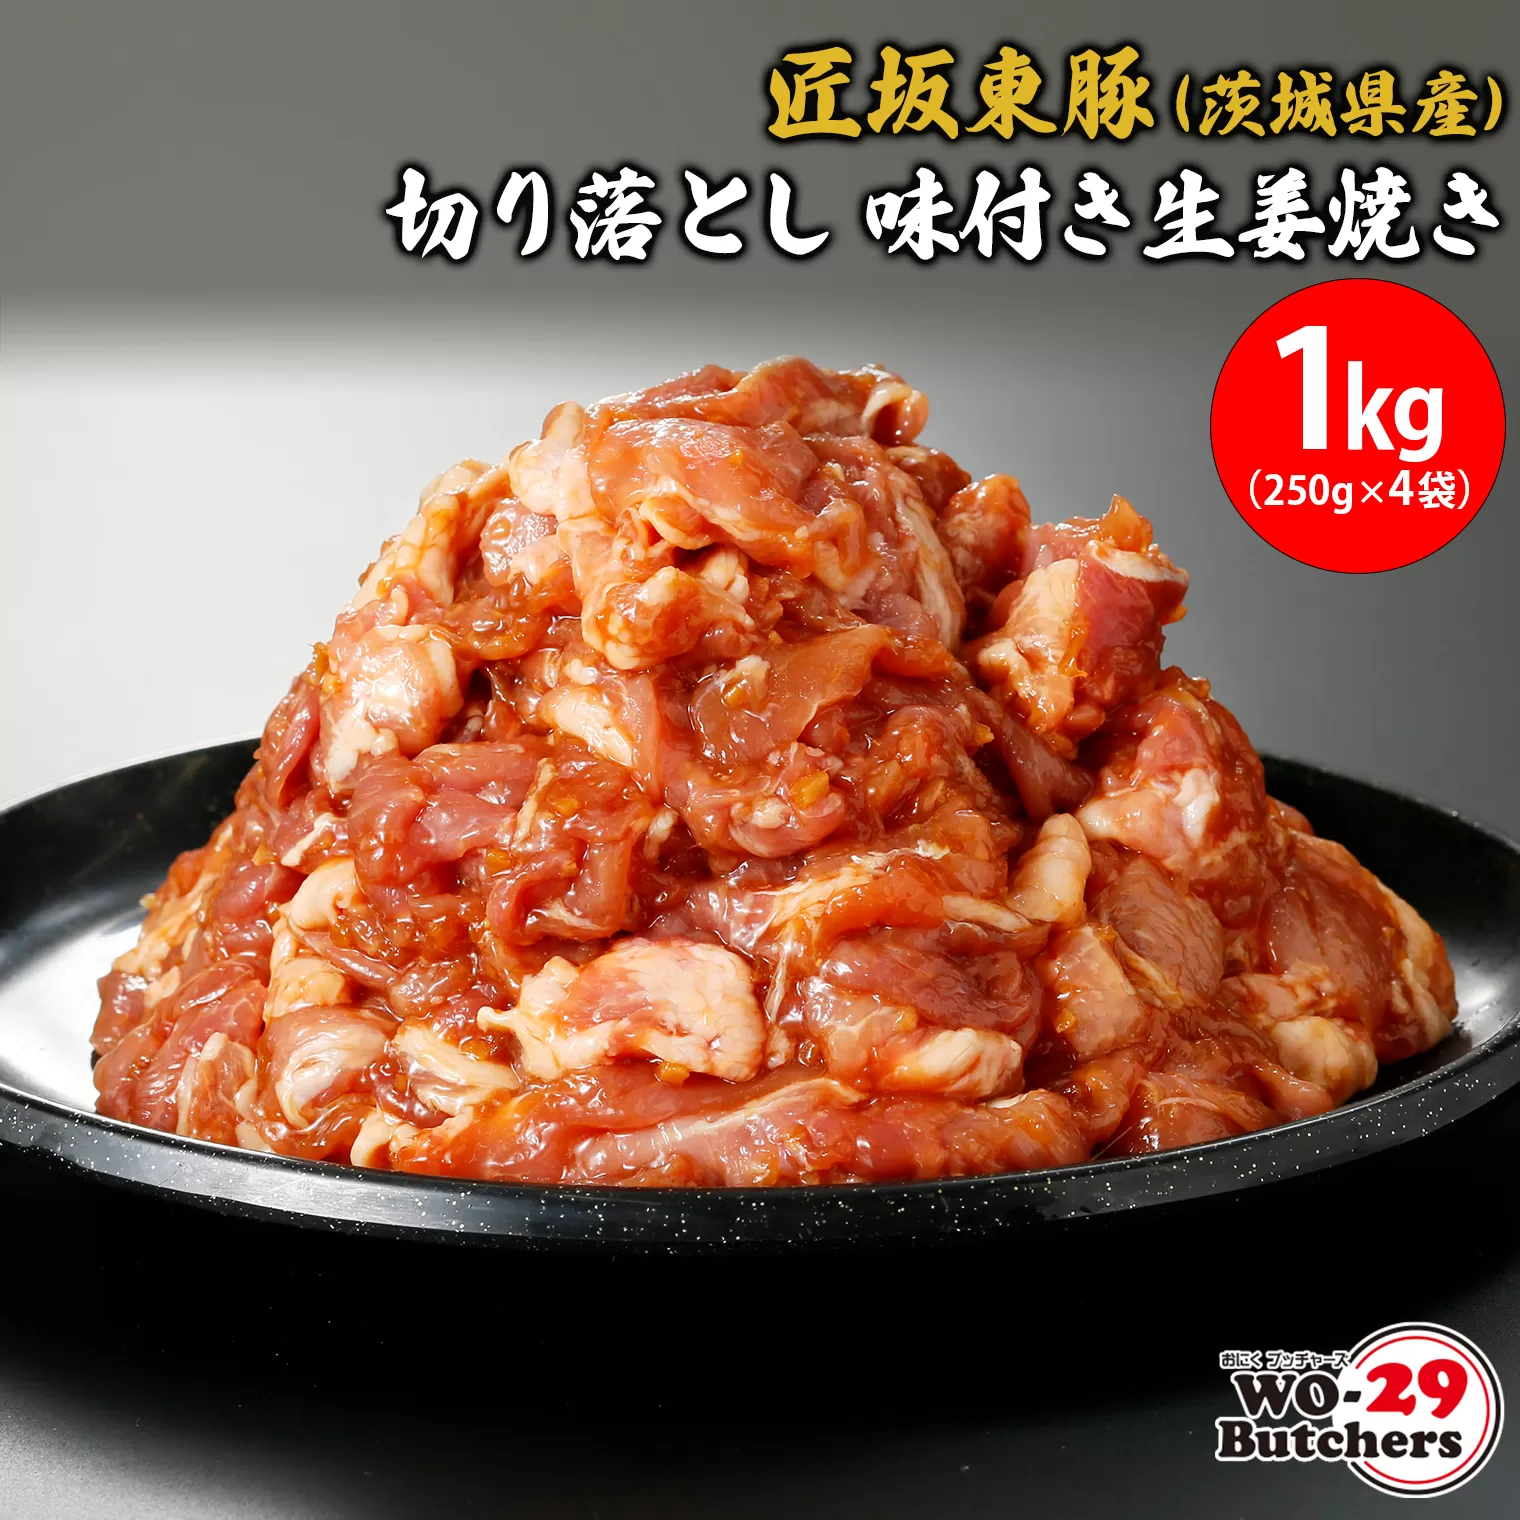 匠坂東豚(茨城県産)切り落とし 味付き生姜焼き 1kg(250g×4袋)